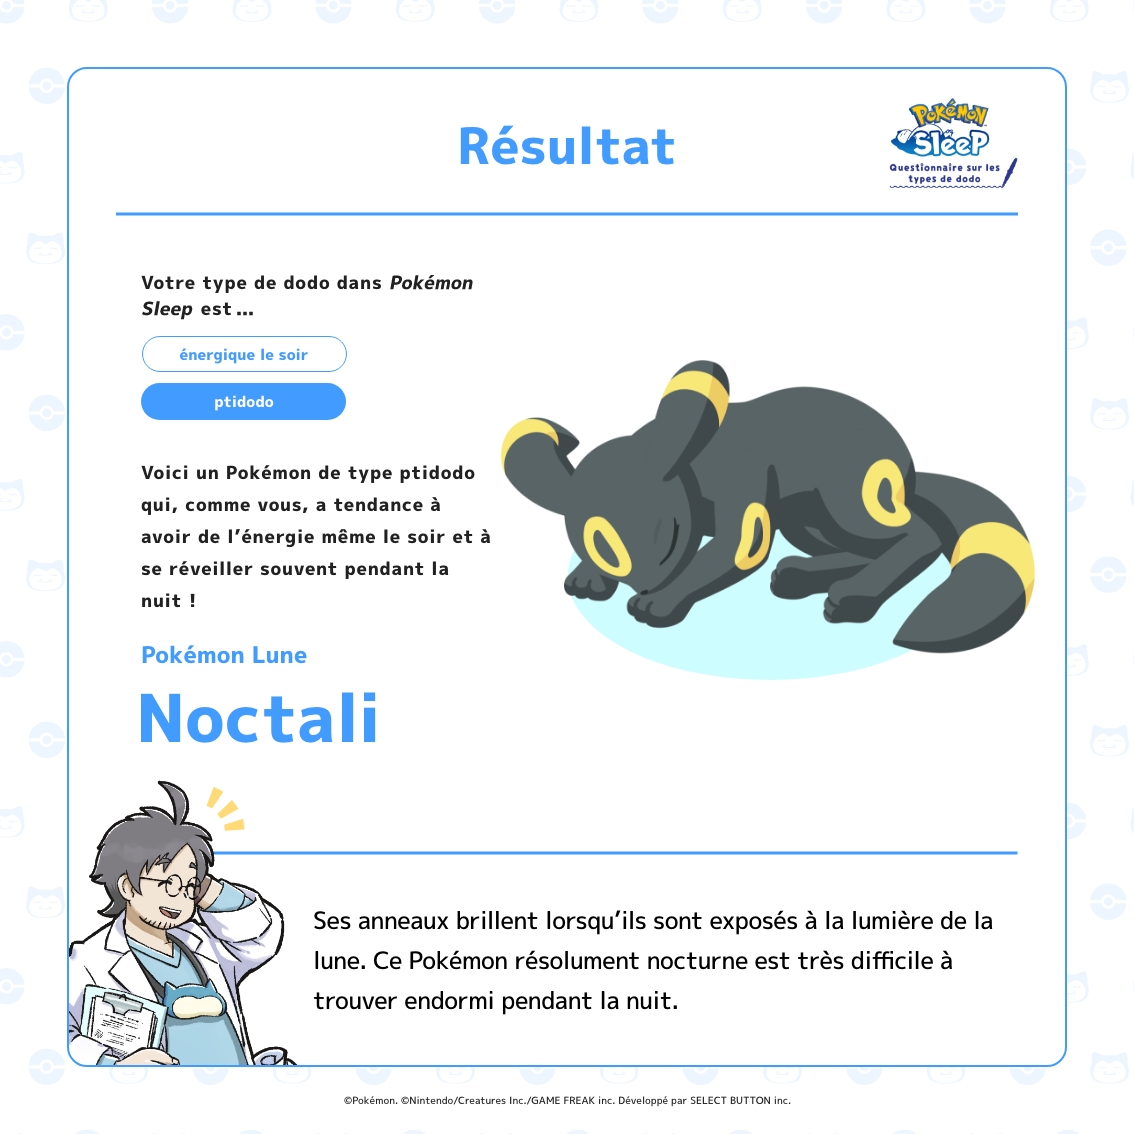 Noctali (Umbreon) Strat - Stratégie et Moveset du Pokémon Noctali